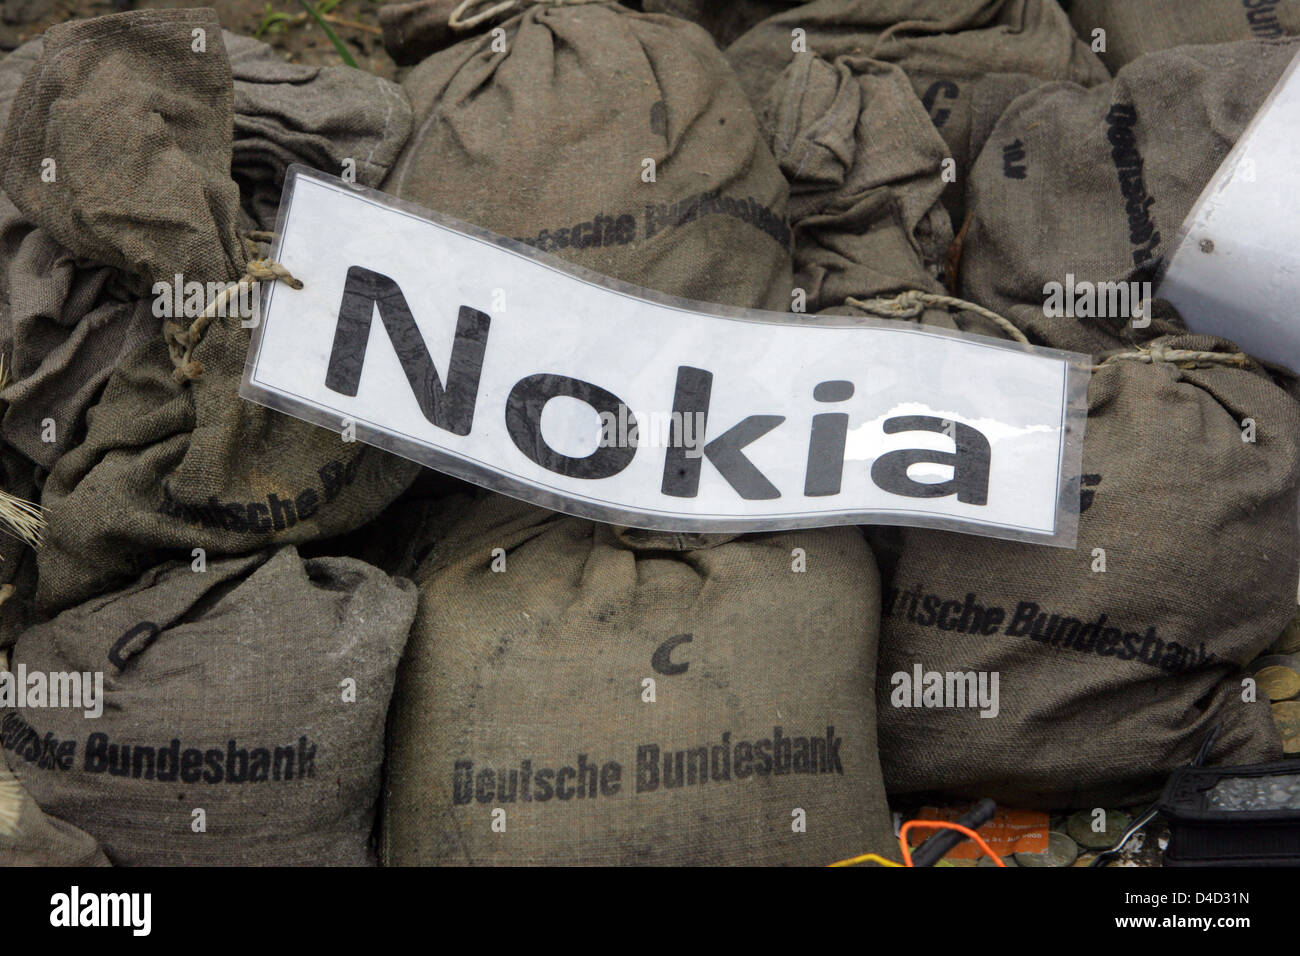 Gebrauchte Handys von Nokia und Taschen von der Deutschen Bundesbank, Reste  von einer Protestaktion von Gewerkschaft "ver.di", abgebildet im Nokia-Werk  in Bochum, Deutschland, 11. März 2008. Das Ministerium für Wirtschaft des  deutschen